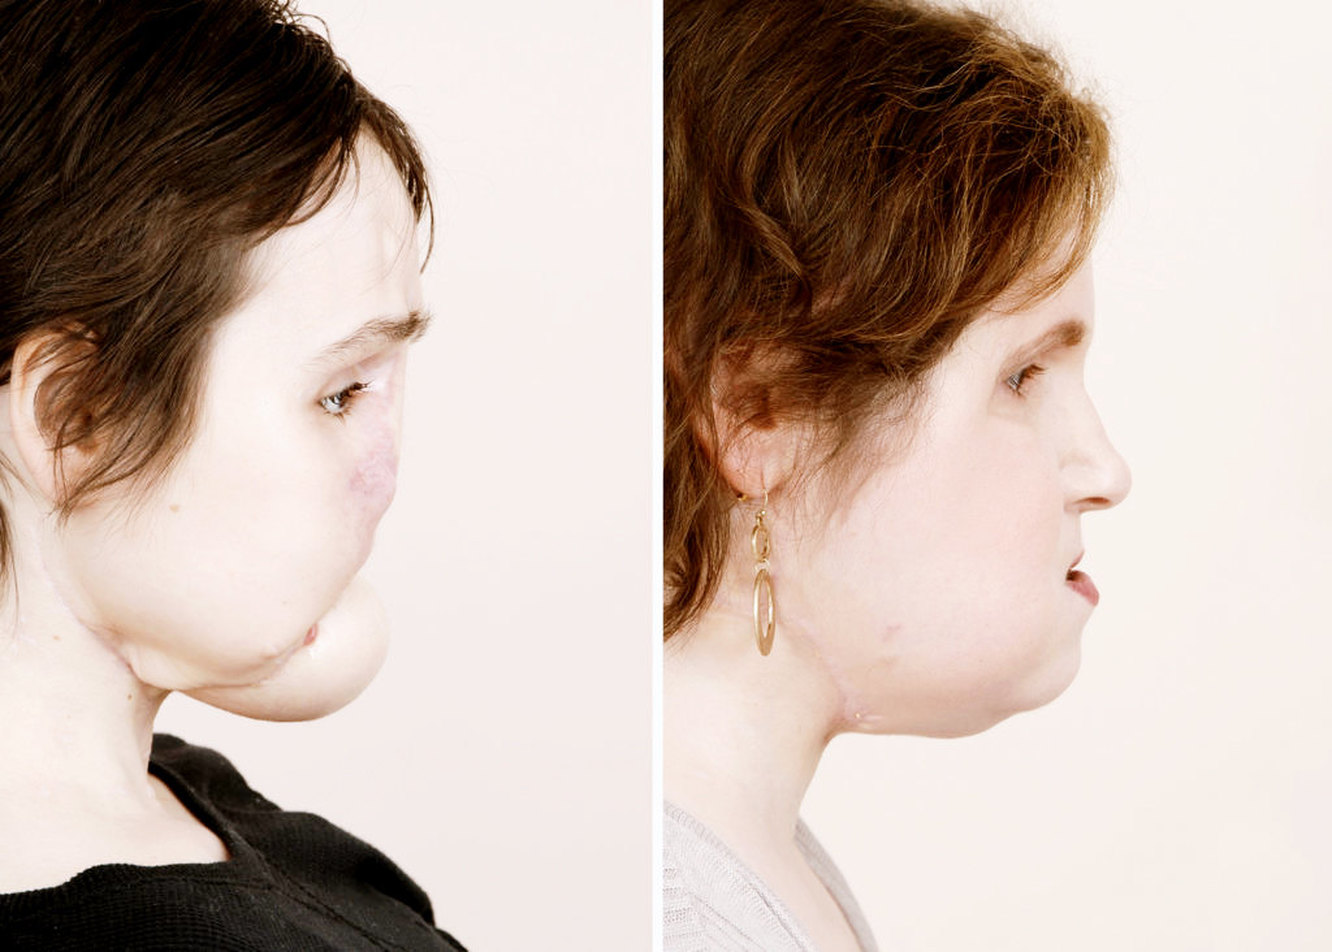 Пересадка волос до и после, противопоказания и реабилитация